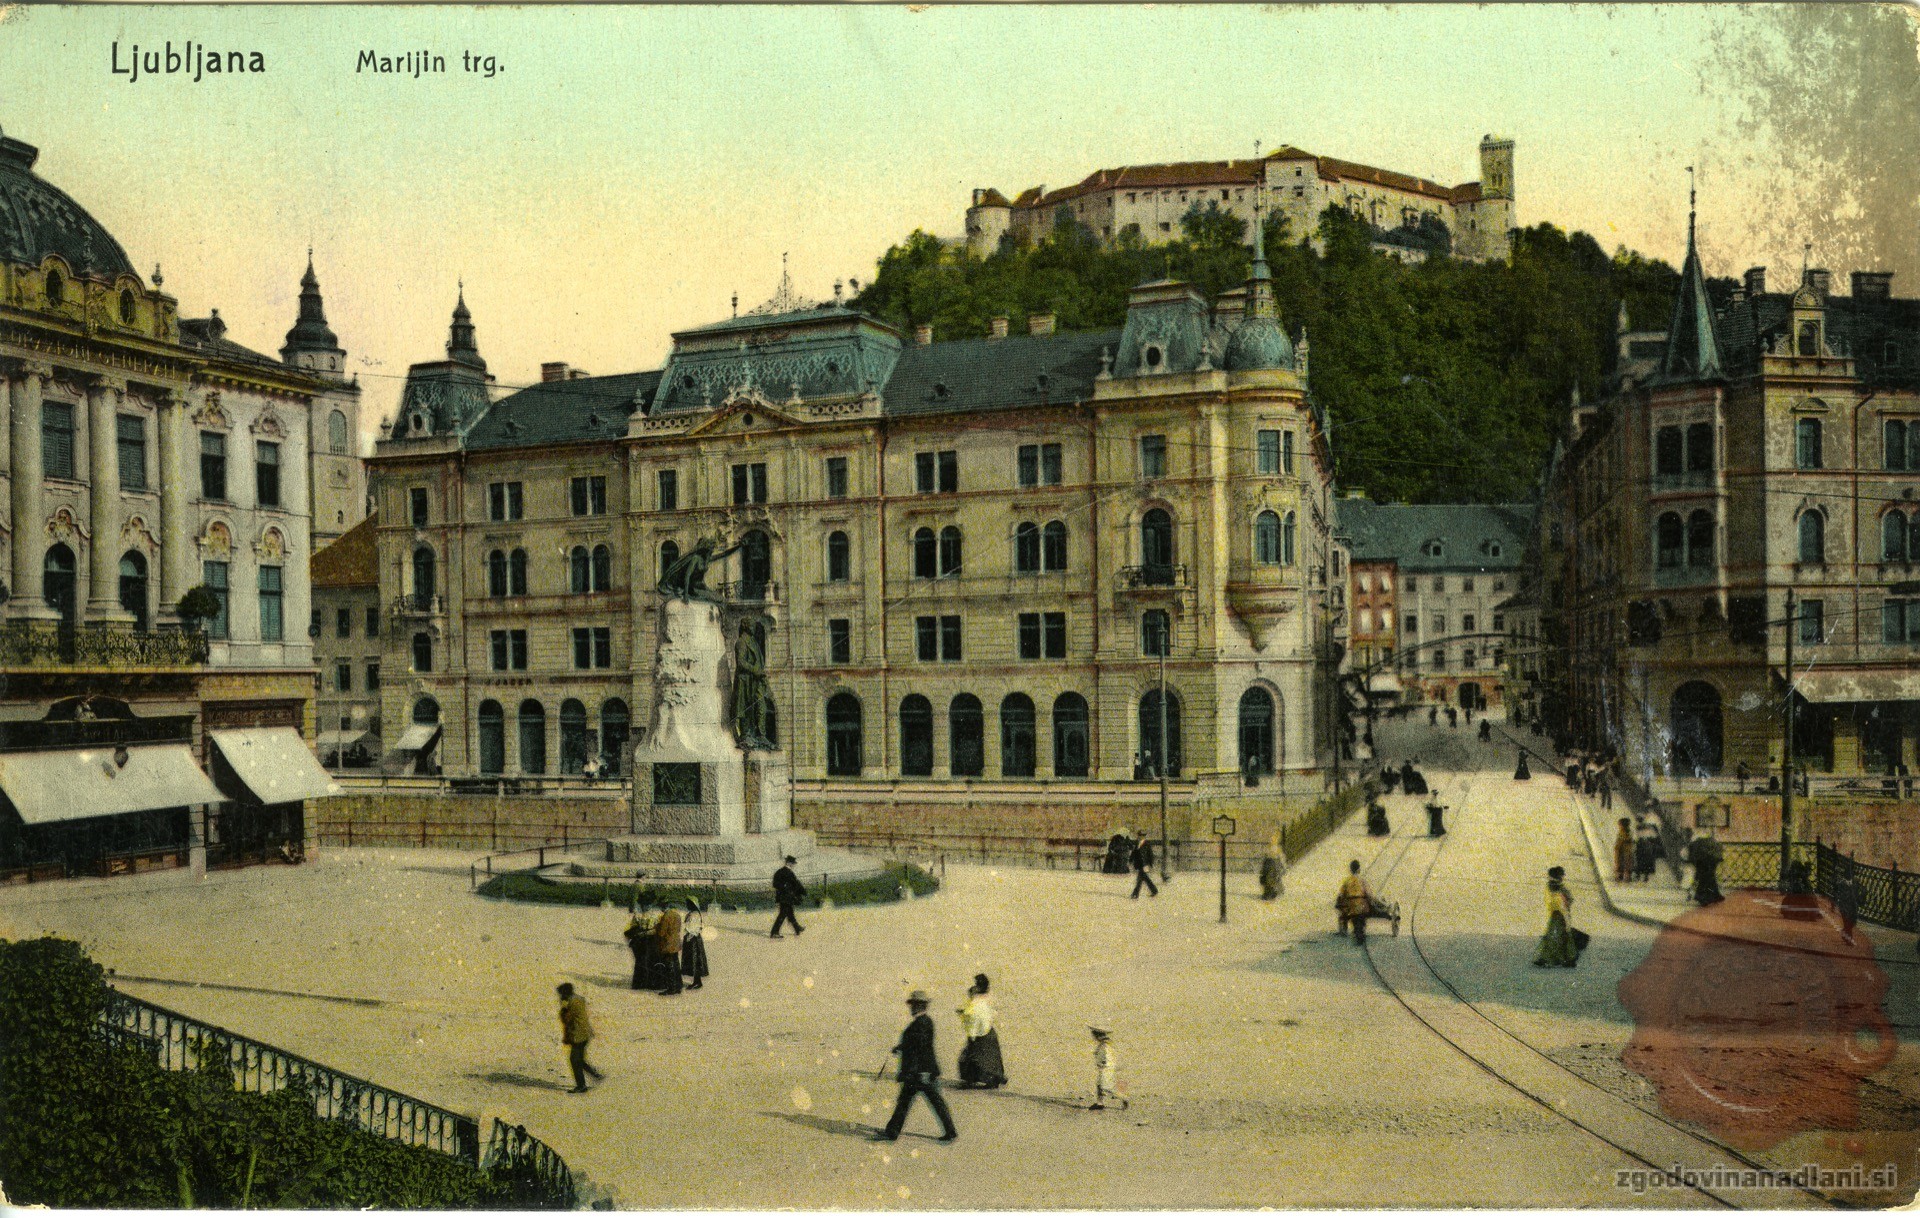 prešernov_spomenik_trg_ljubljanski_grad_kresija_filipov_dvorec_ljubljana_1909